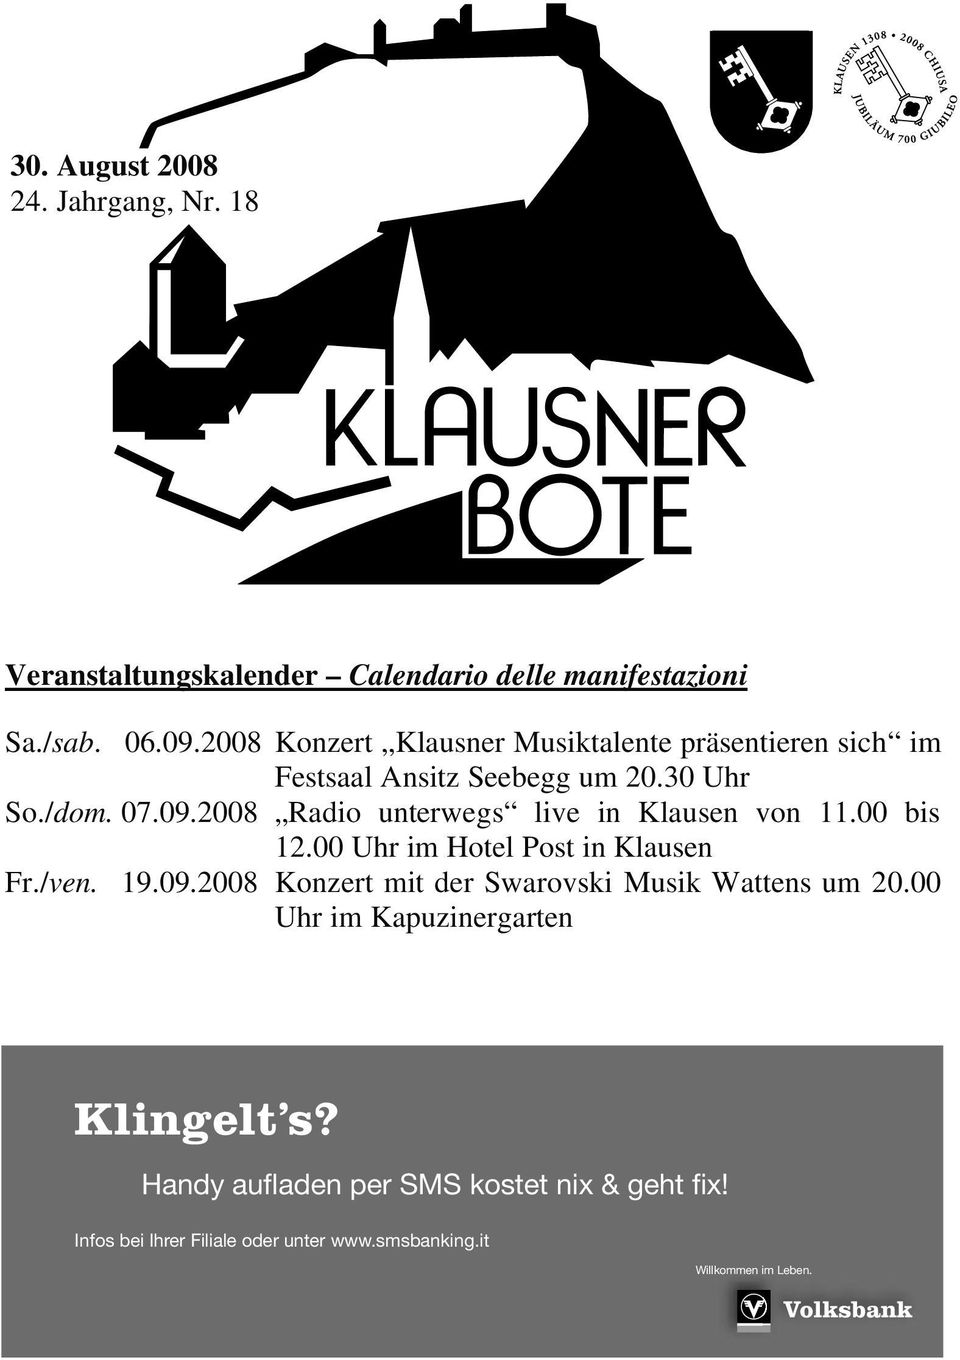 2008 Radio unterwegs live in Klausen von 11.00 bis 12.00 Uhr im Hotel Post in Klausen Fr./ven. 19.09.